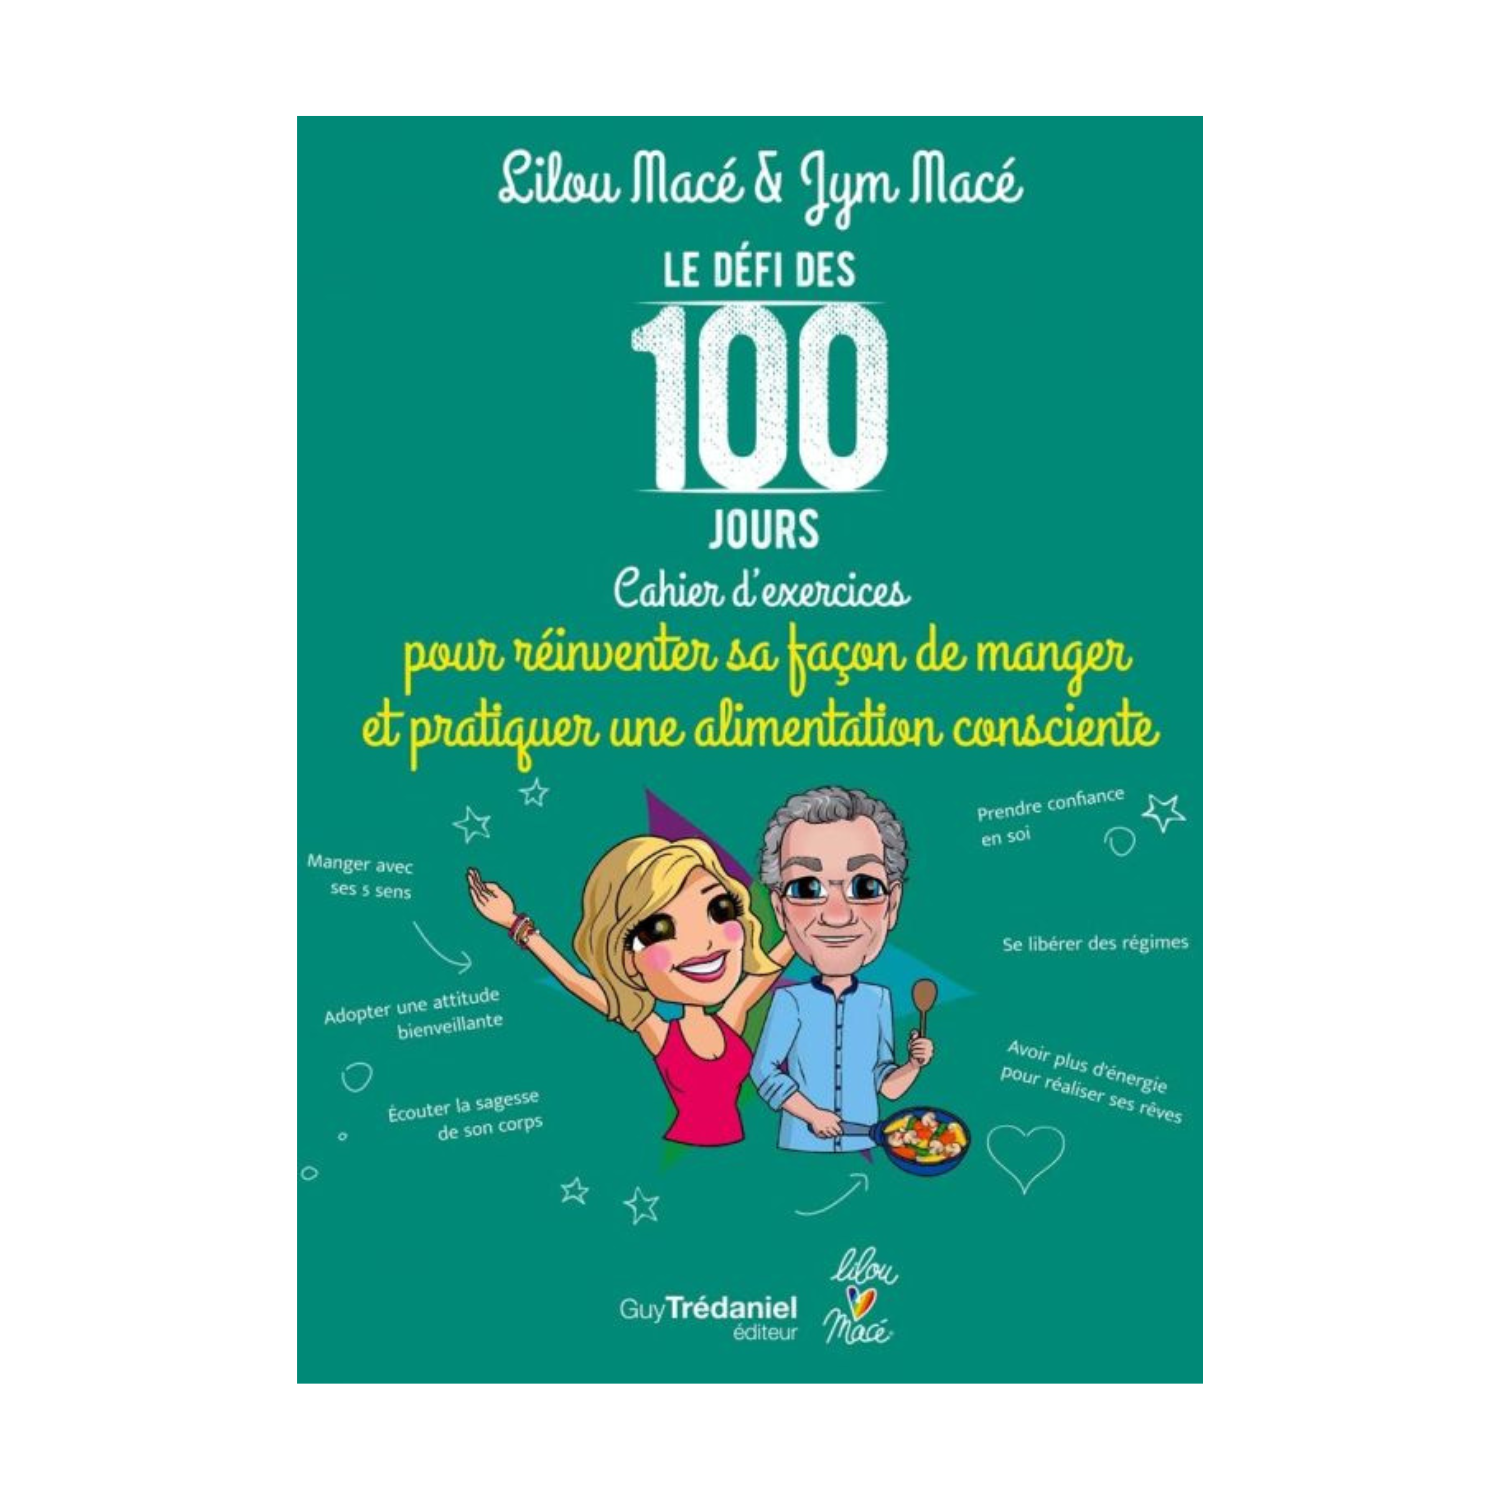 Le défi des 100 jours, Cahier d'exercices pour une alimentation consciente